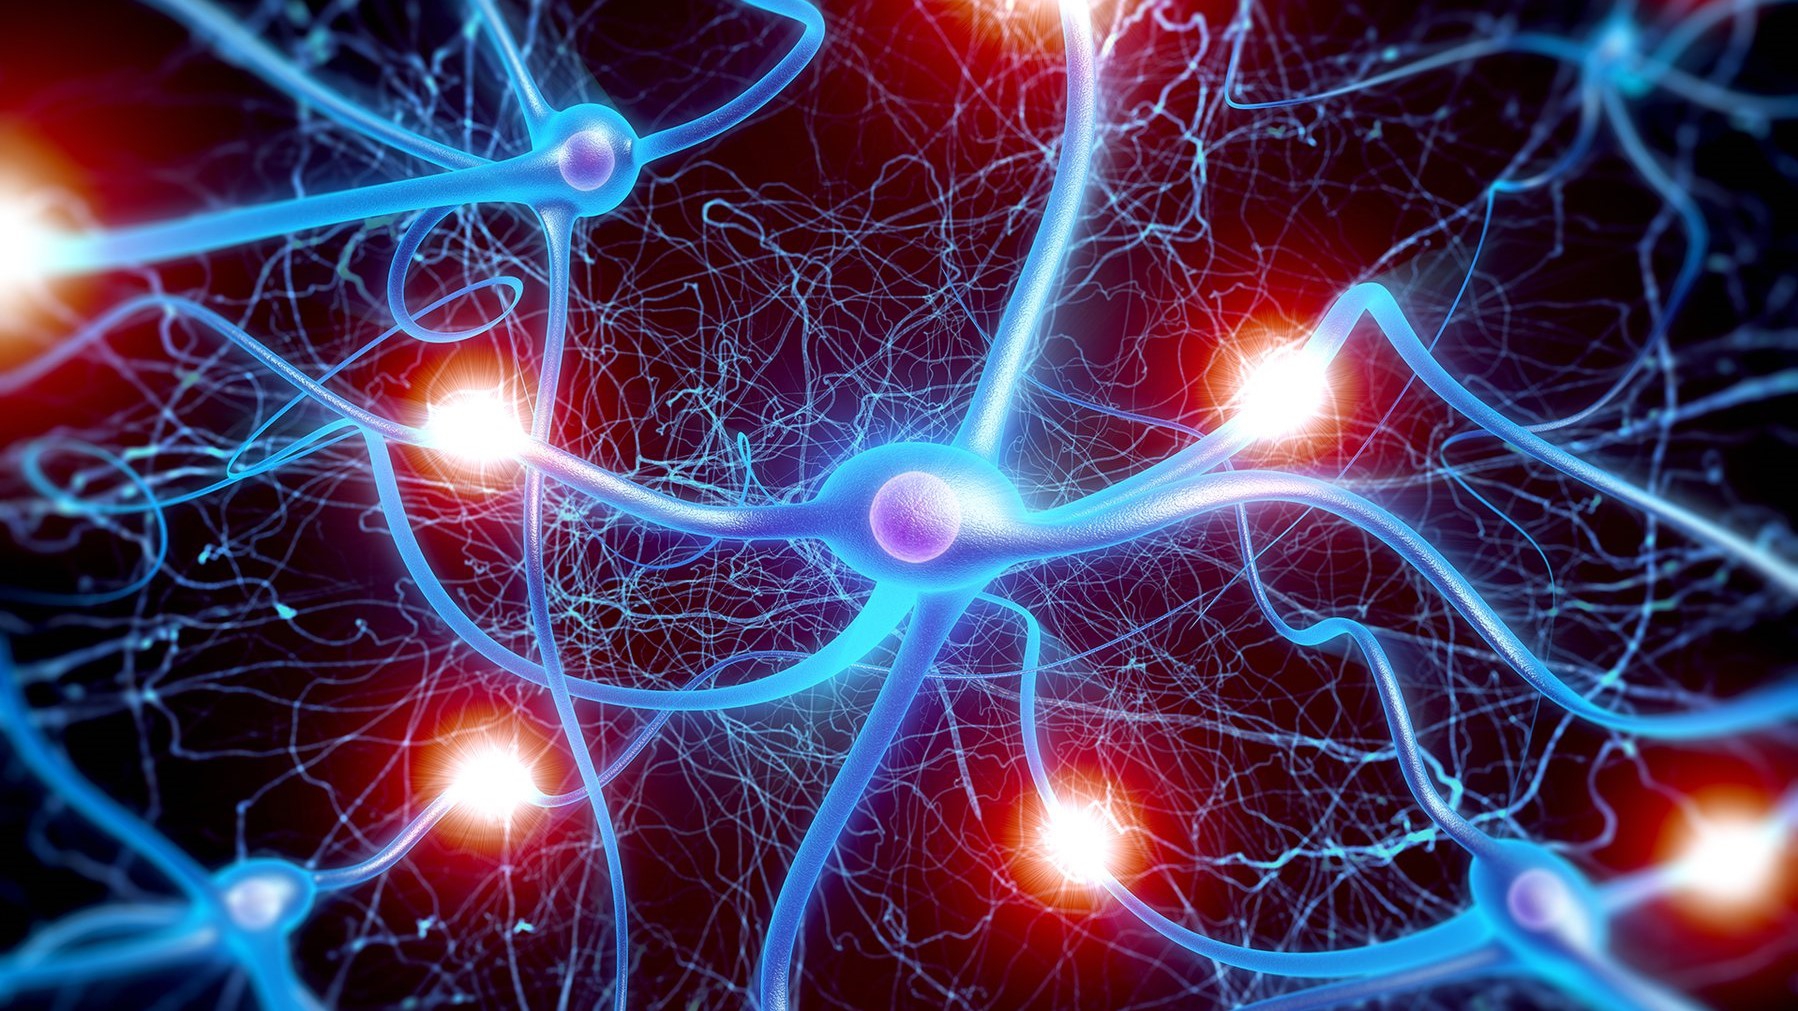 Tại sao bao miễn trên sợi trục của nơ ron quan trọng đối với chức năng của nó?